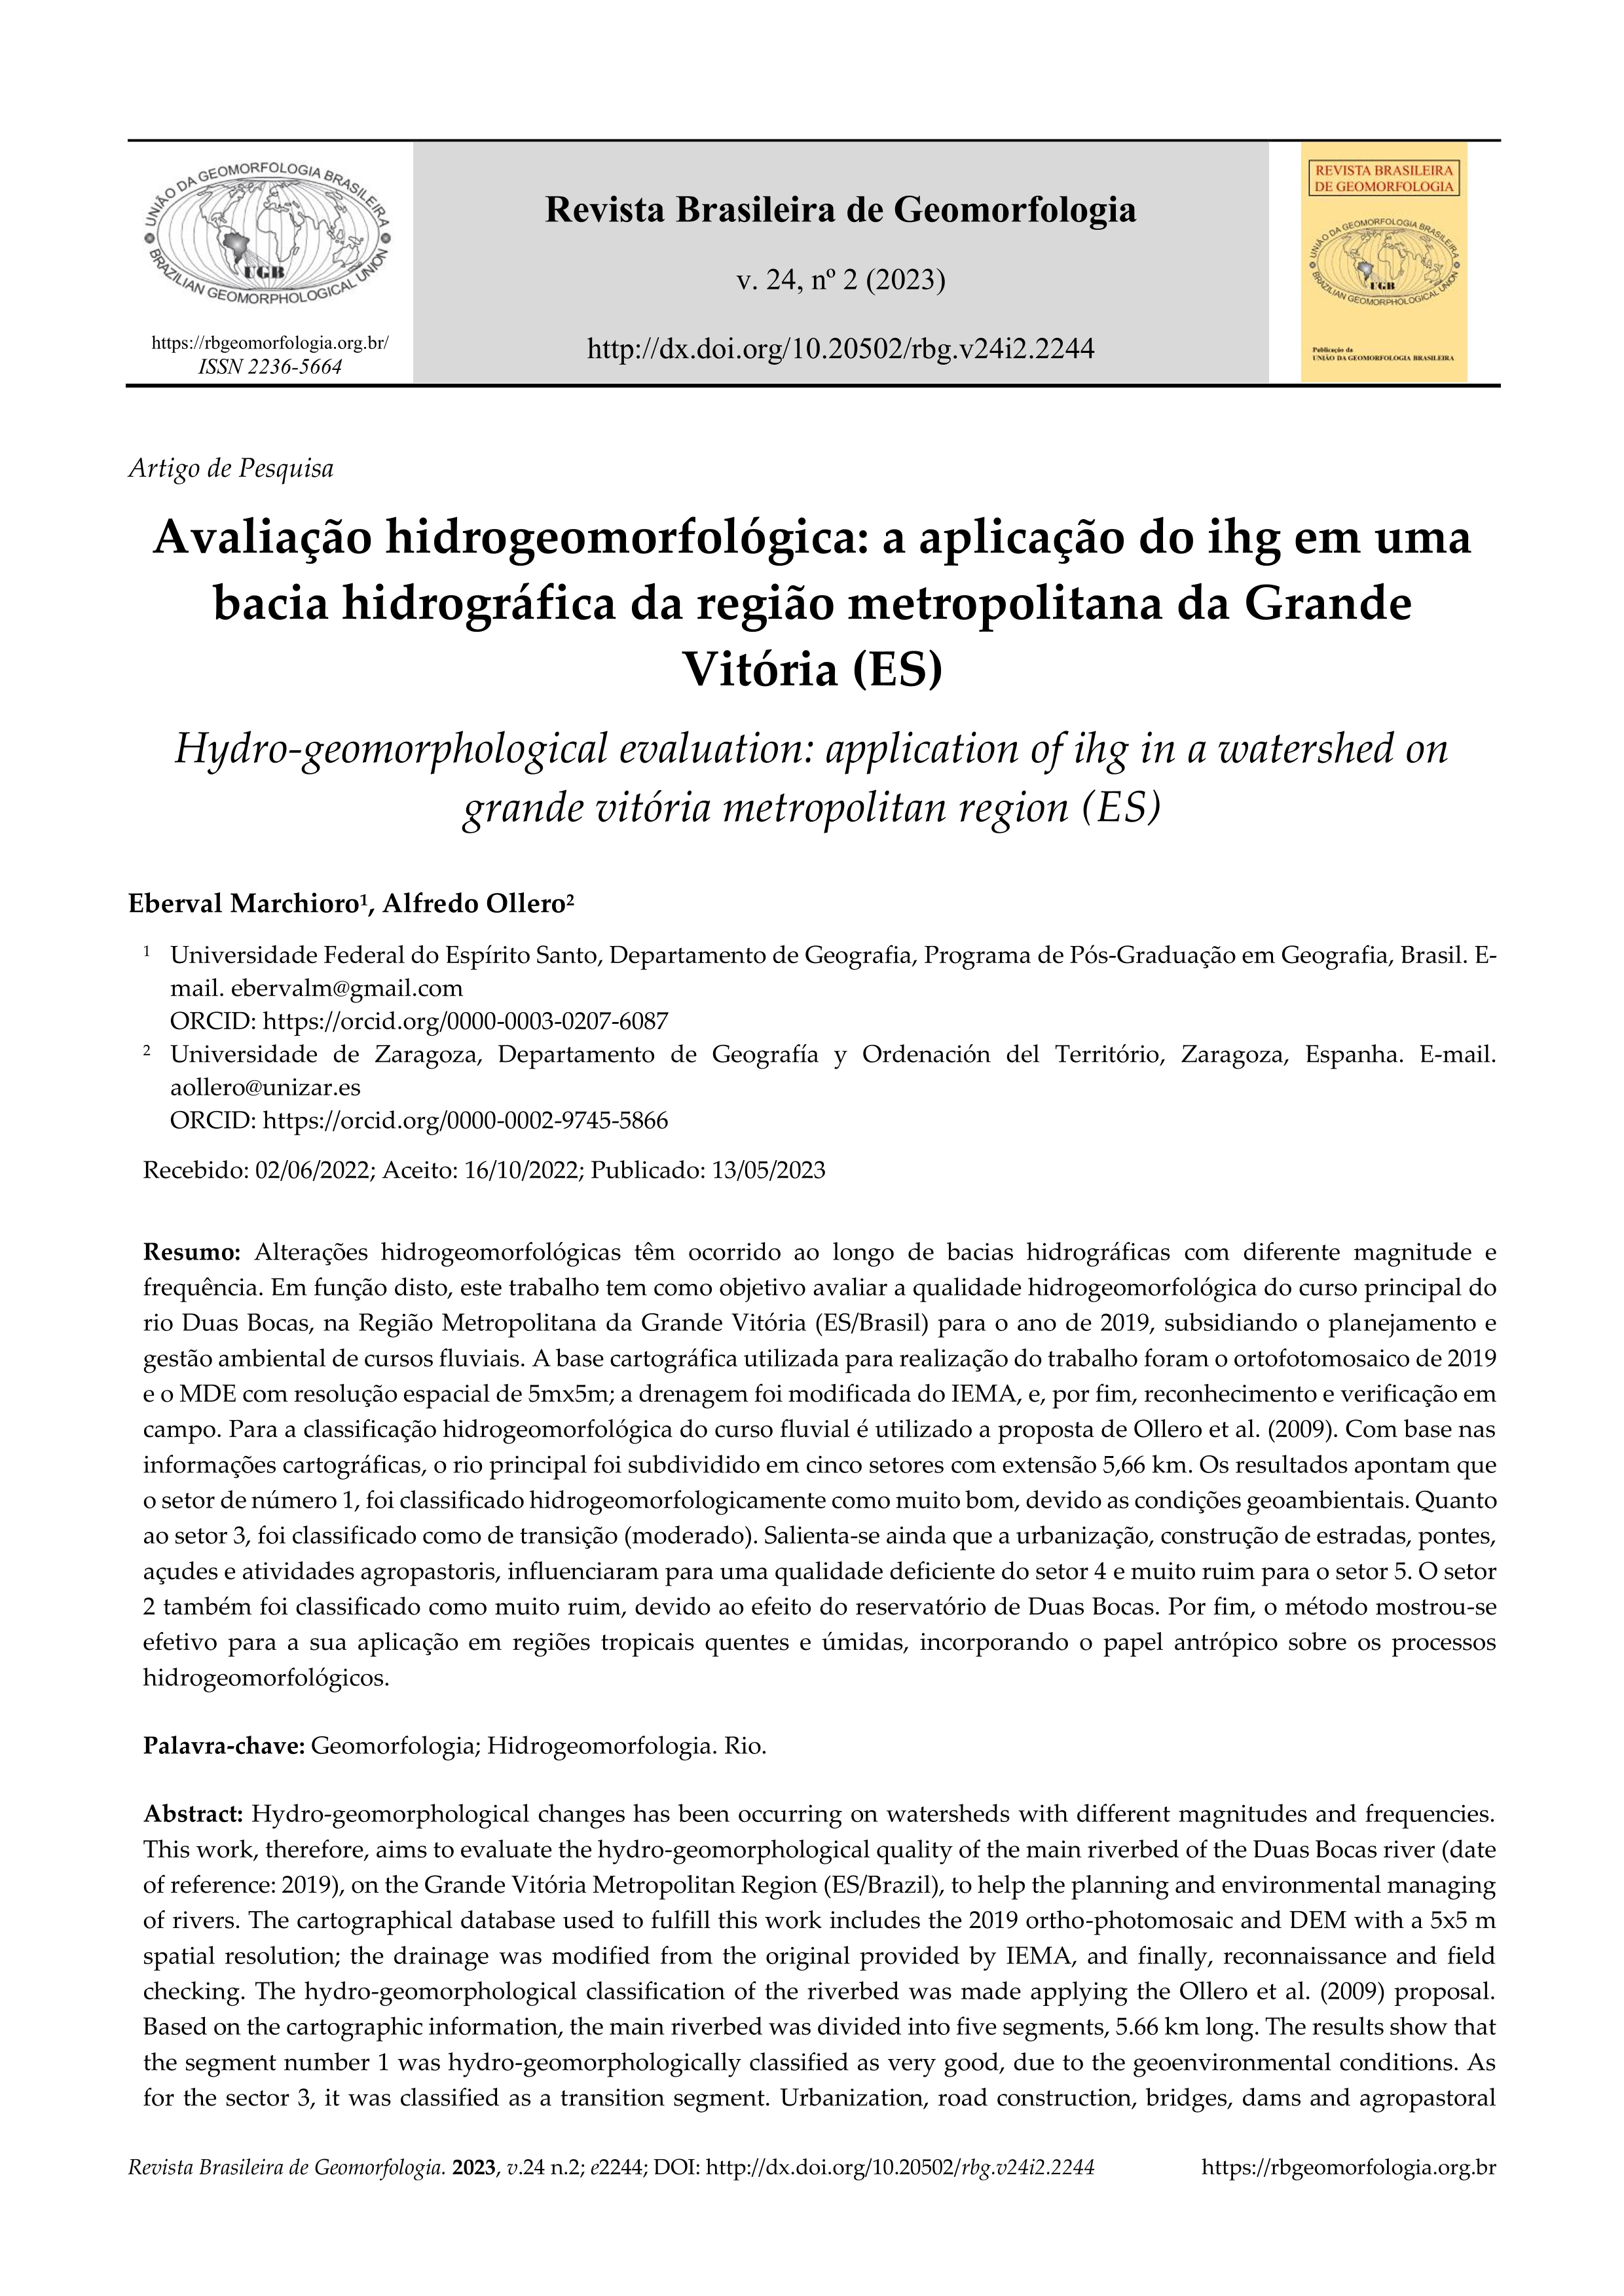 Avaliação hidrogeomorfológica: a aplicação do IHG em uma bacia hidrográfica da região metropolitana da Grande Vitória (ES)